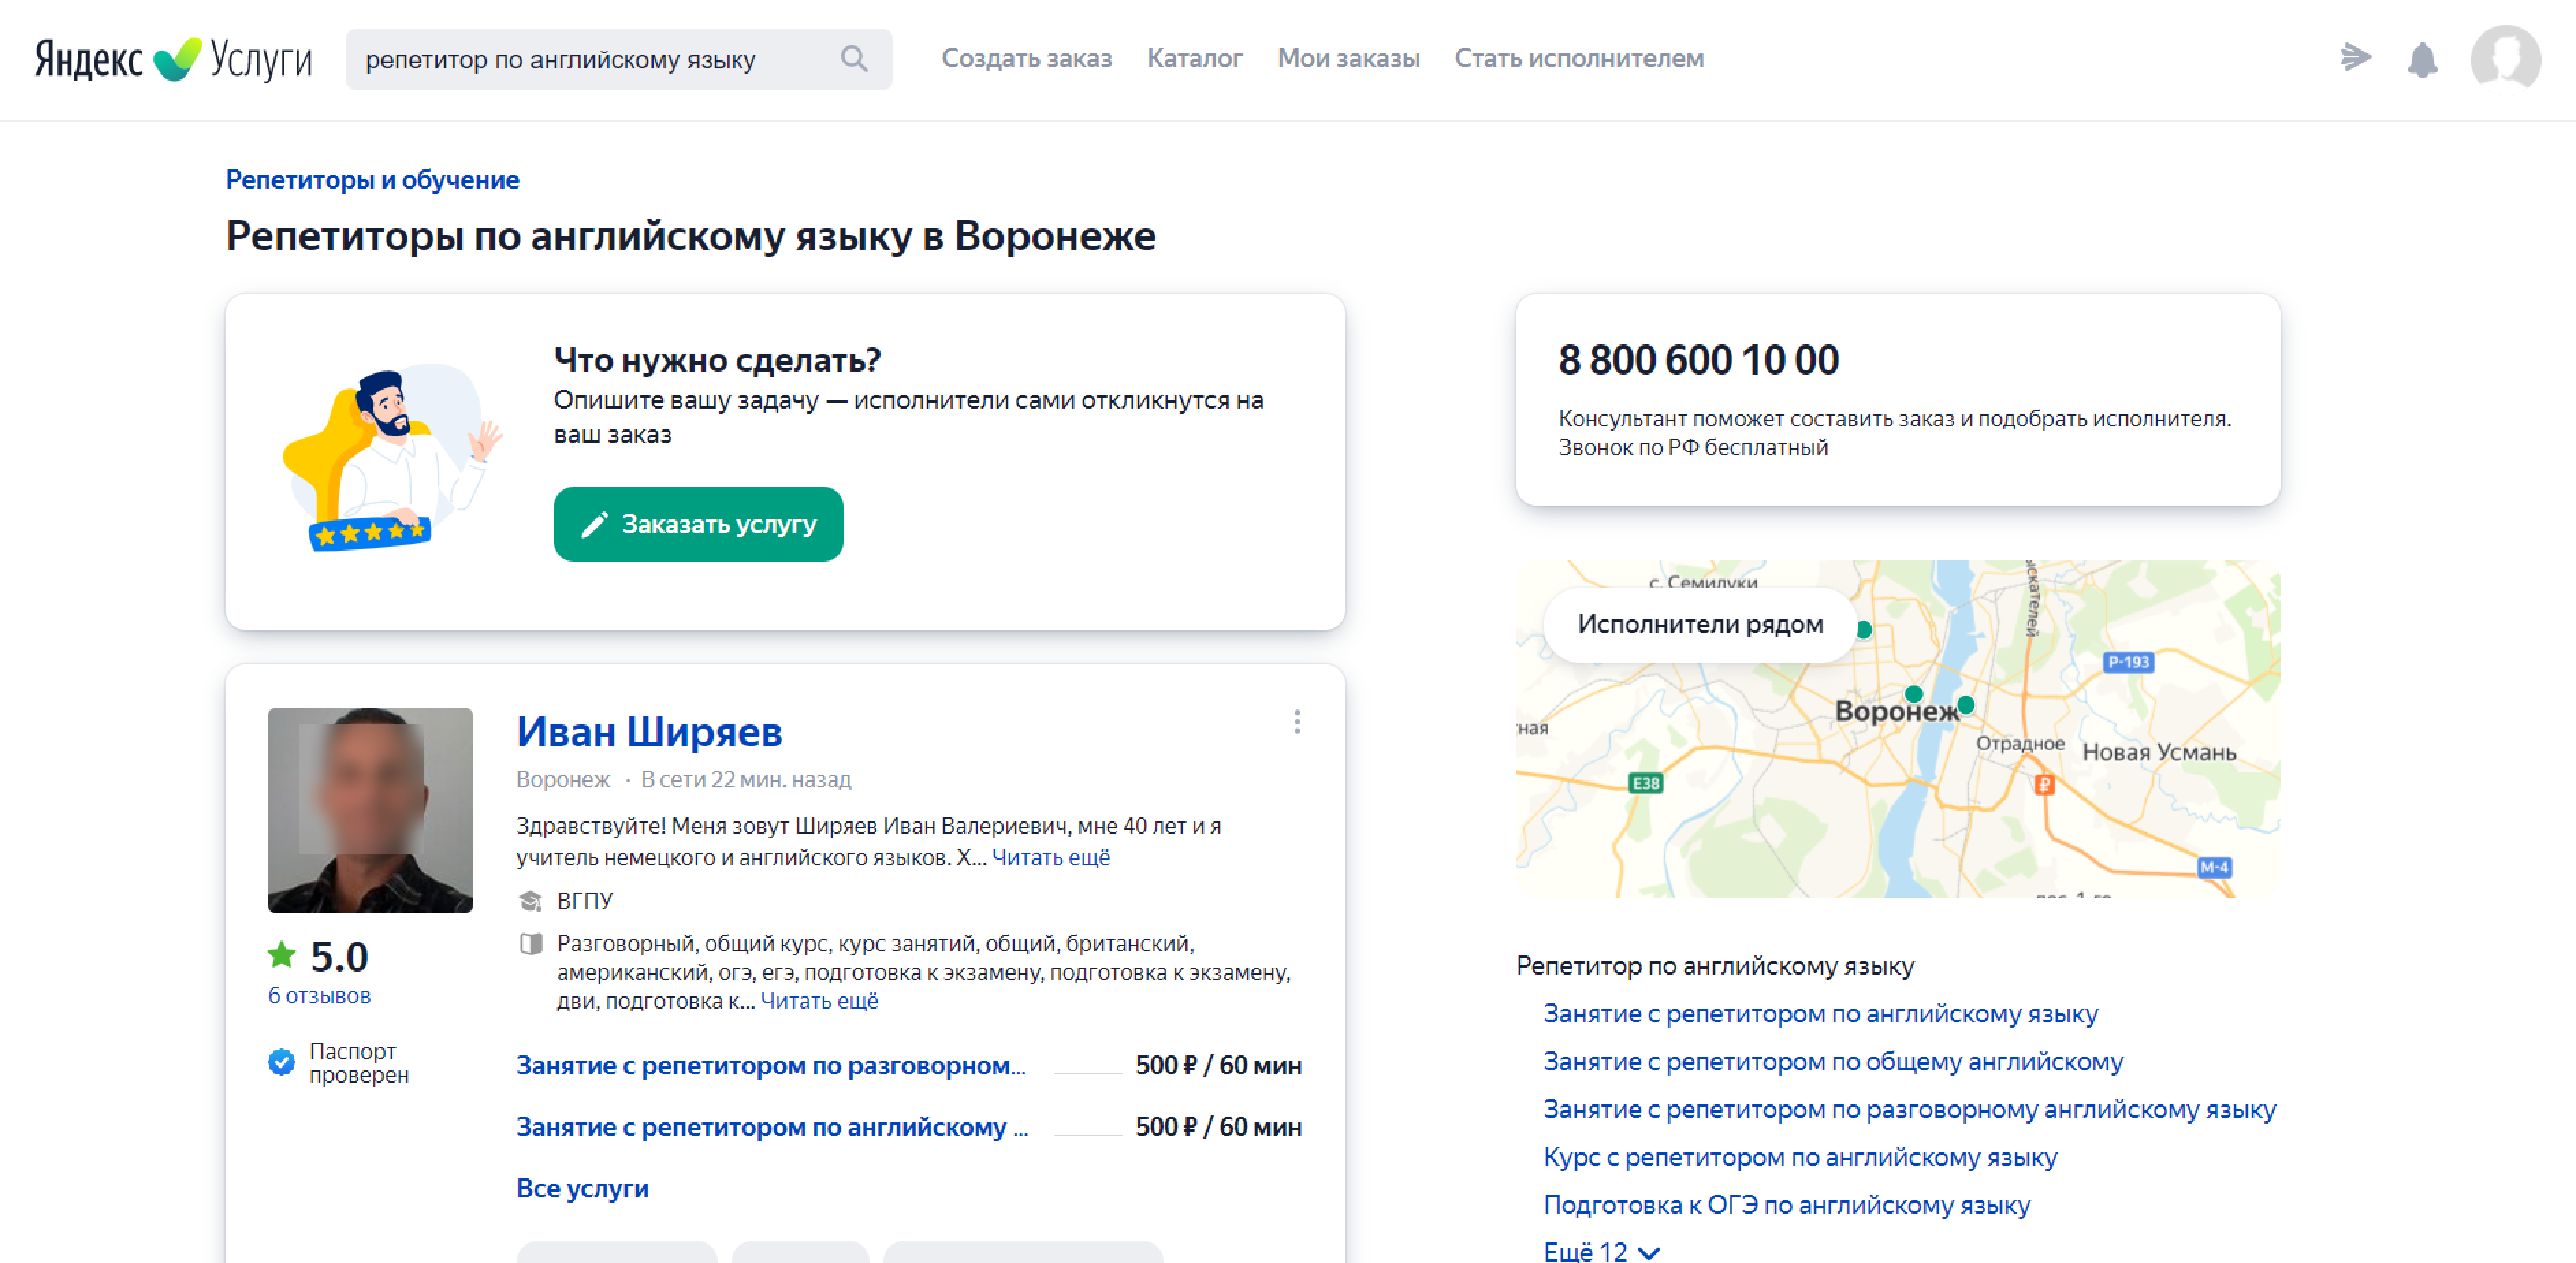 профиль на Яндекс Услугах